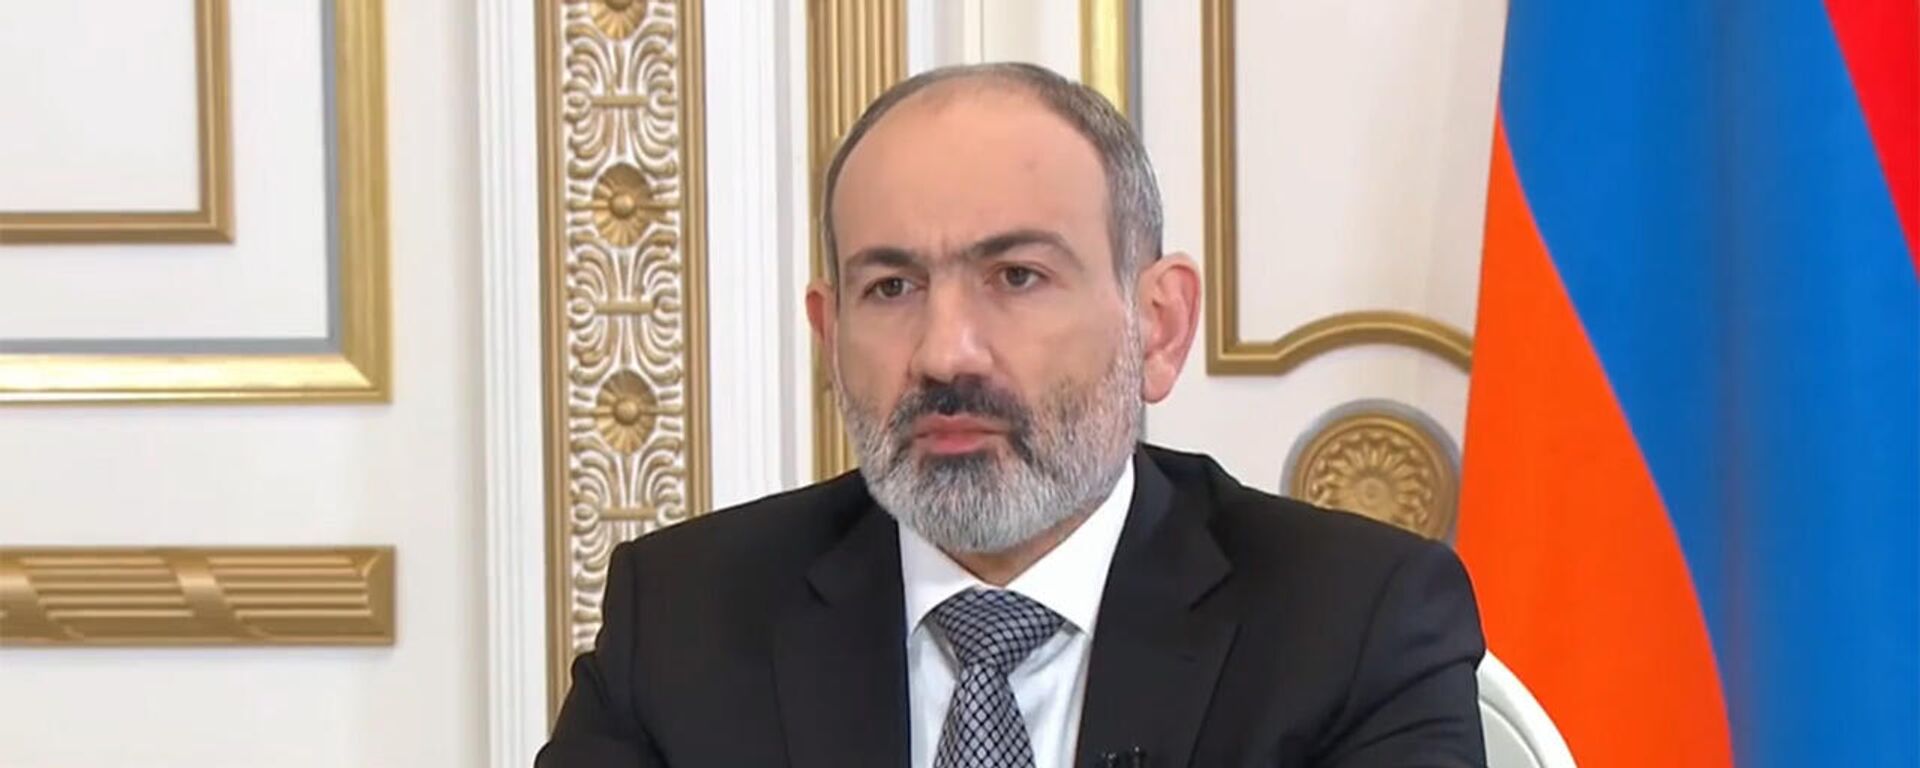 Премьер-министр Никол Пашинян отвечает на вопросы СМИ в прямом эфире - Sputnik Армения, 1920, 26.12.2021